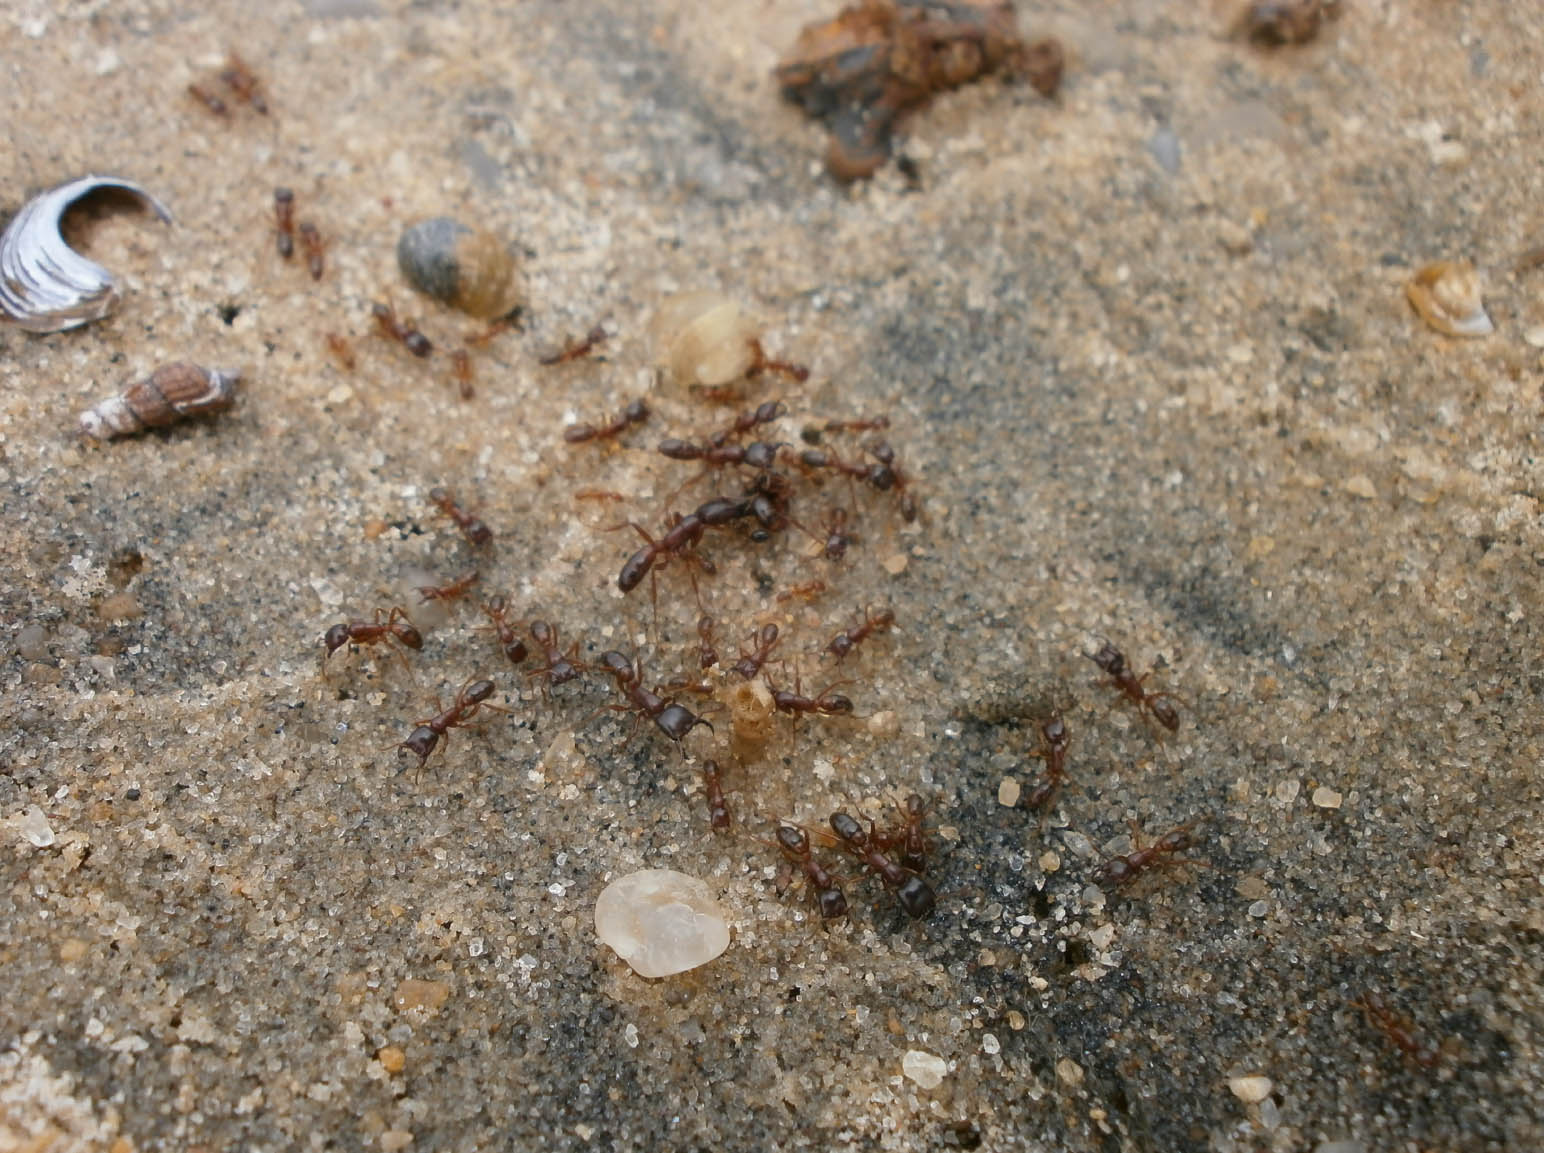 Driver ants (Dorylus) sulla spiaggia del Lago Vittoria ad Entebbe, qui le abbiamo incontrate per la prima volta  (Foto: I.Toni).